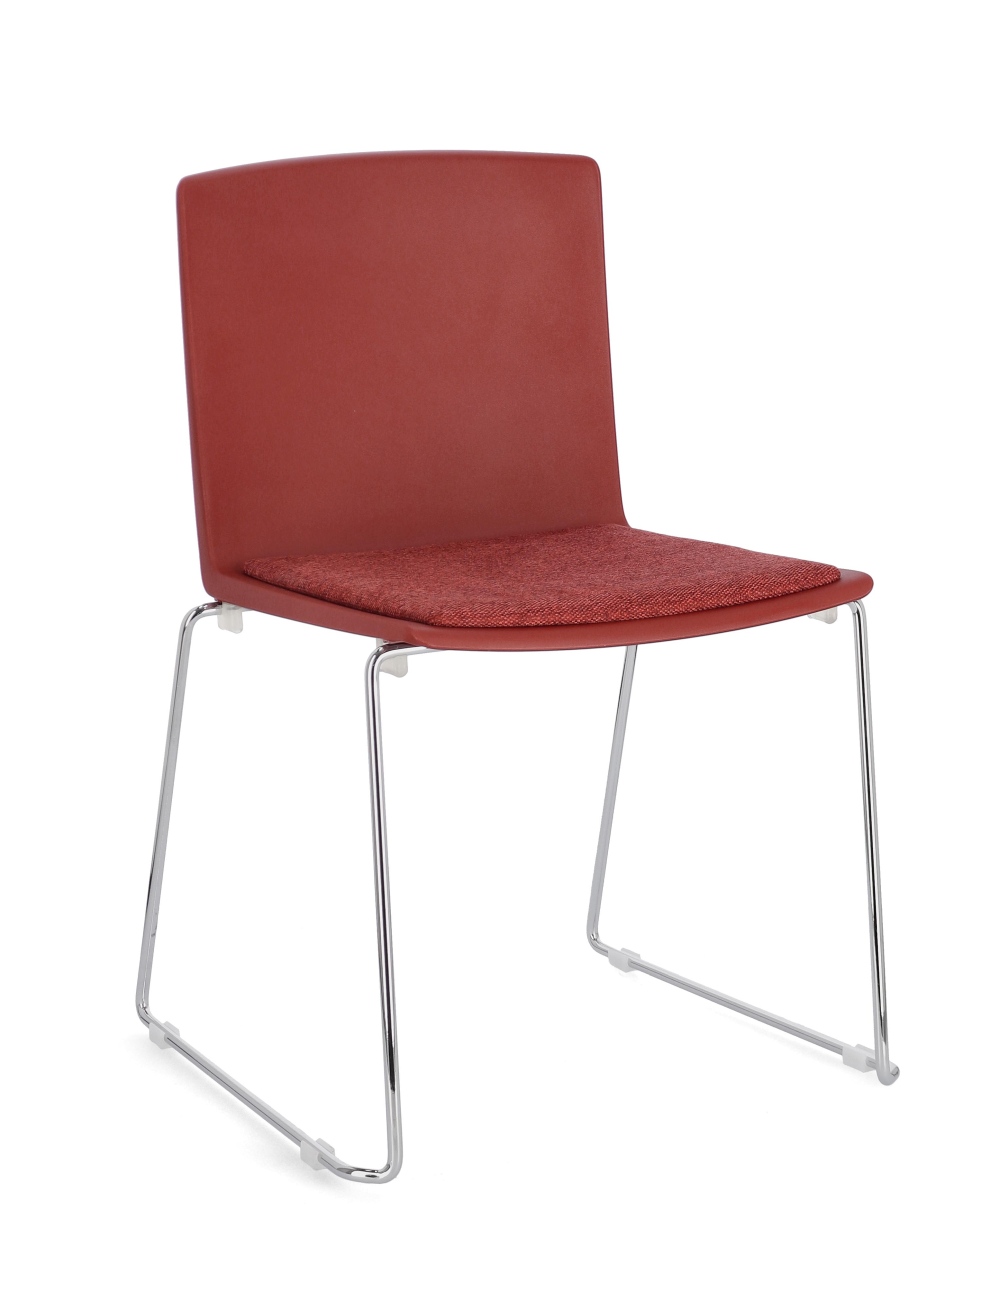 Der Esszimmerstuhl Giulia überzeugt mit seinem modernen Stil. Gefertigt wurde er aus Kunststoff, welches einen roten Farbton besitzt. Das Gestell ist aus Metall und hat eine silberne Farbe. Der Stuhl besitzt eine Sitzhöhe von 46 cm.